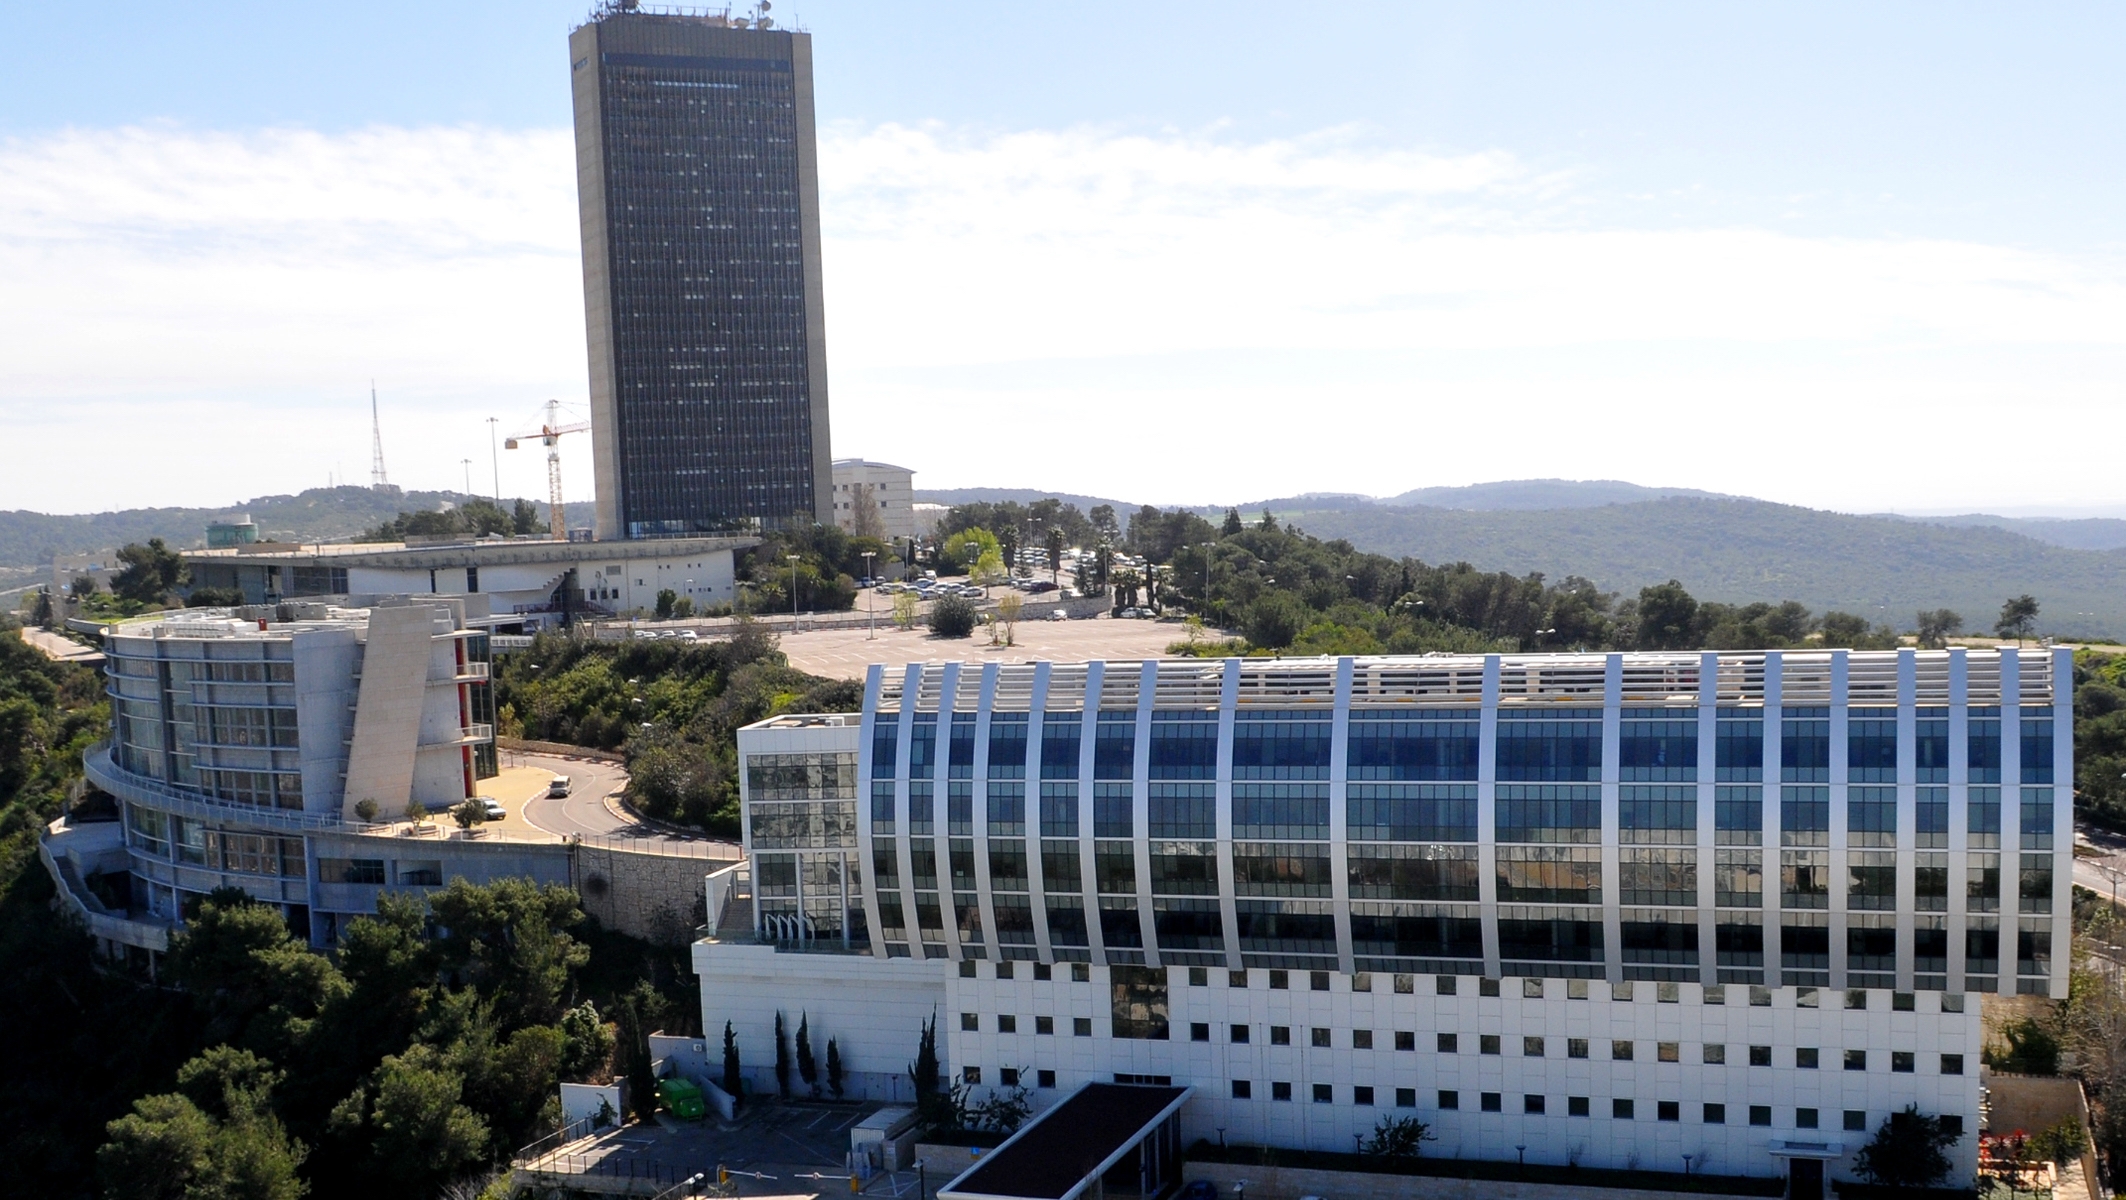 Campus of the University of Haifa